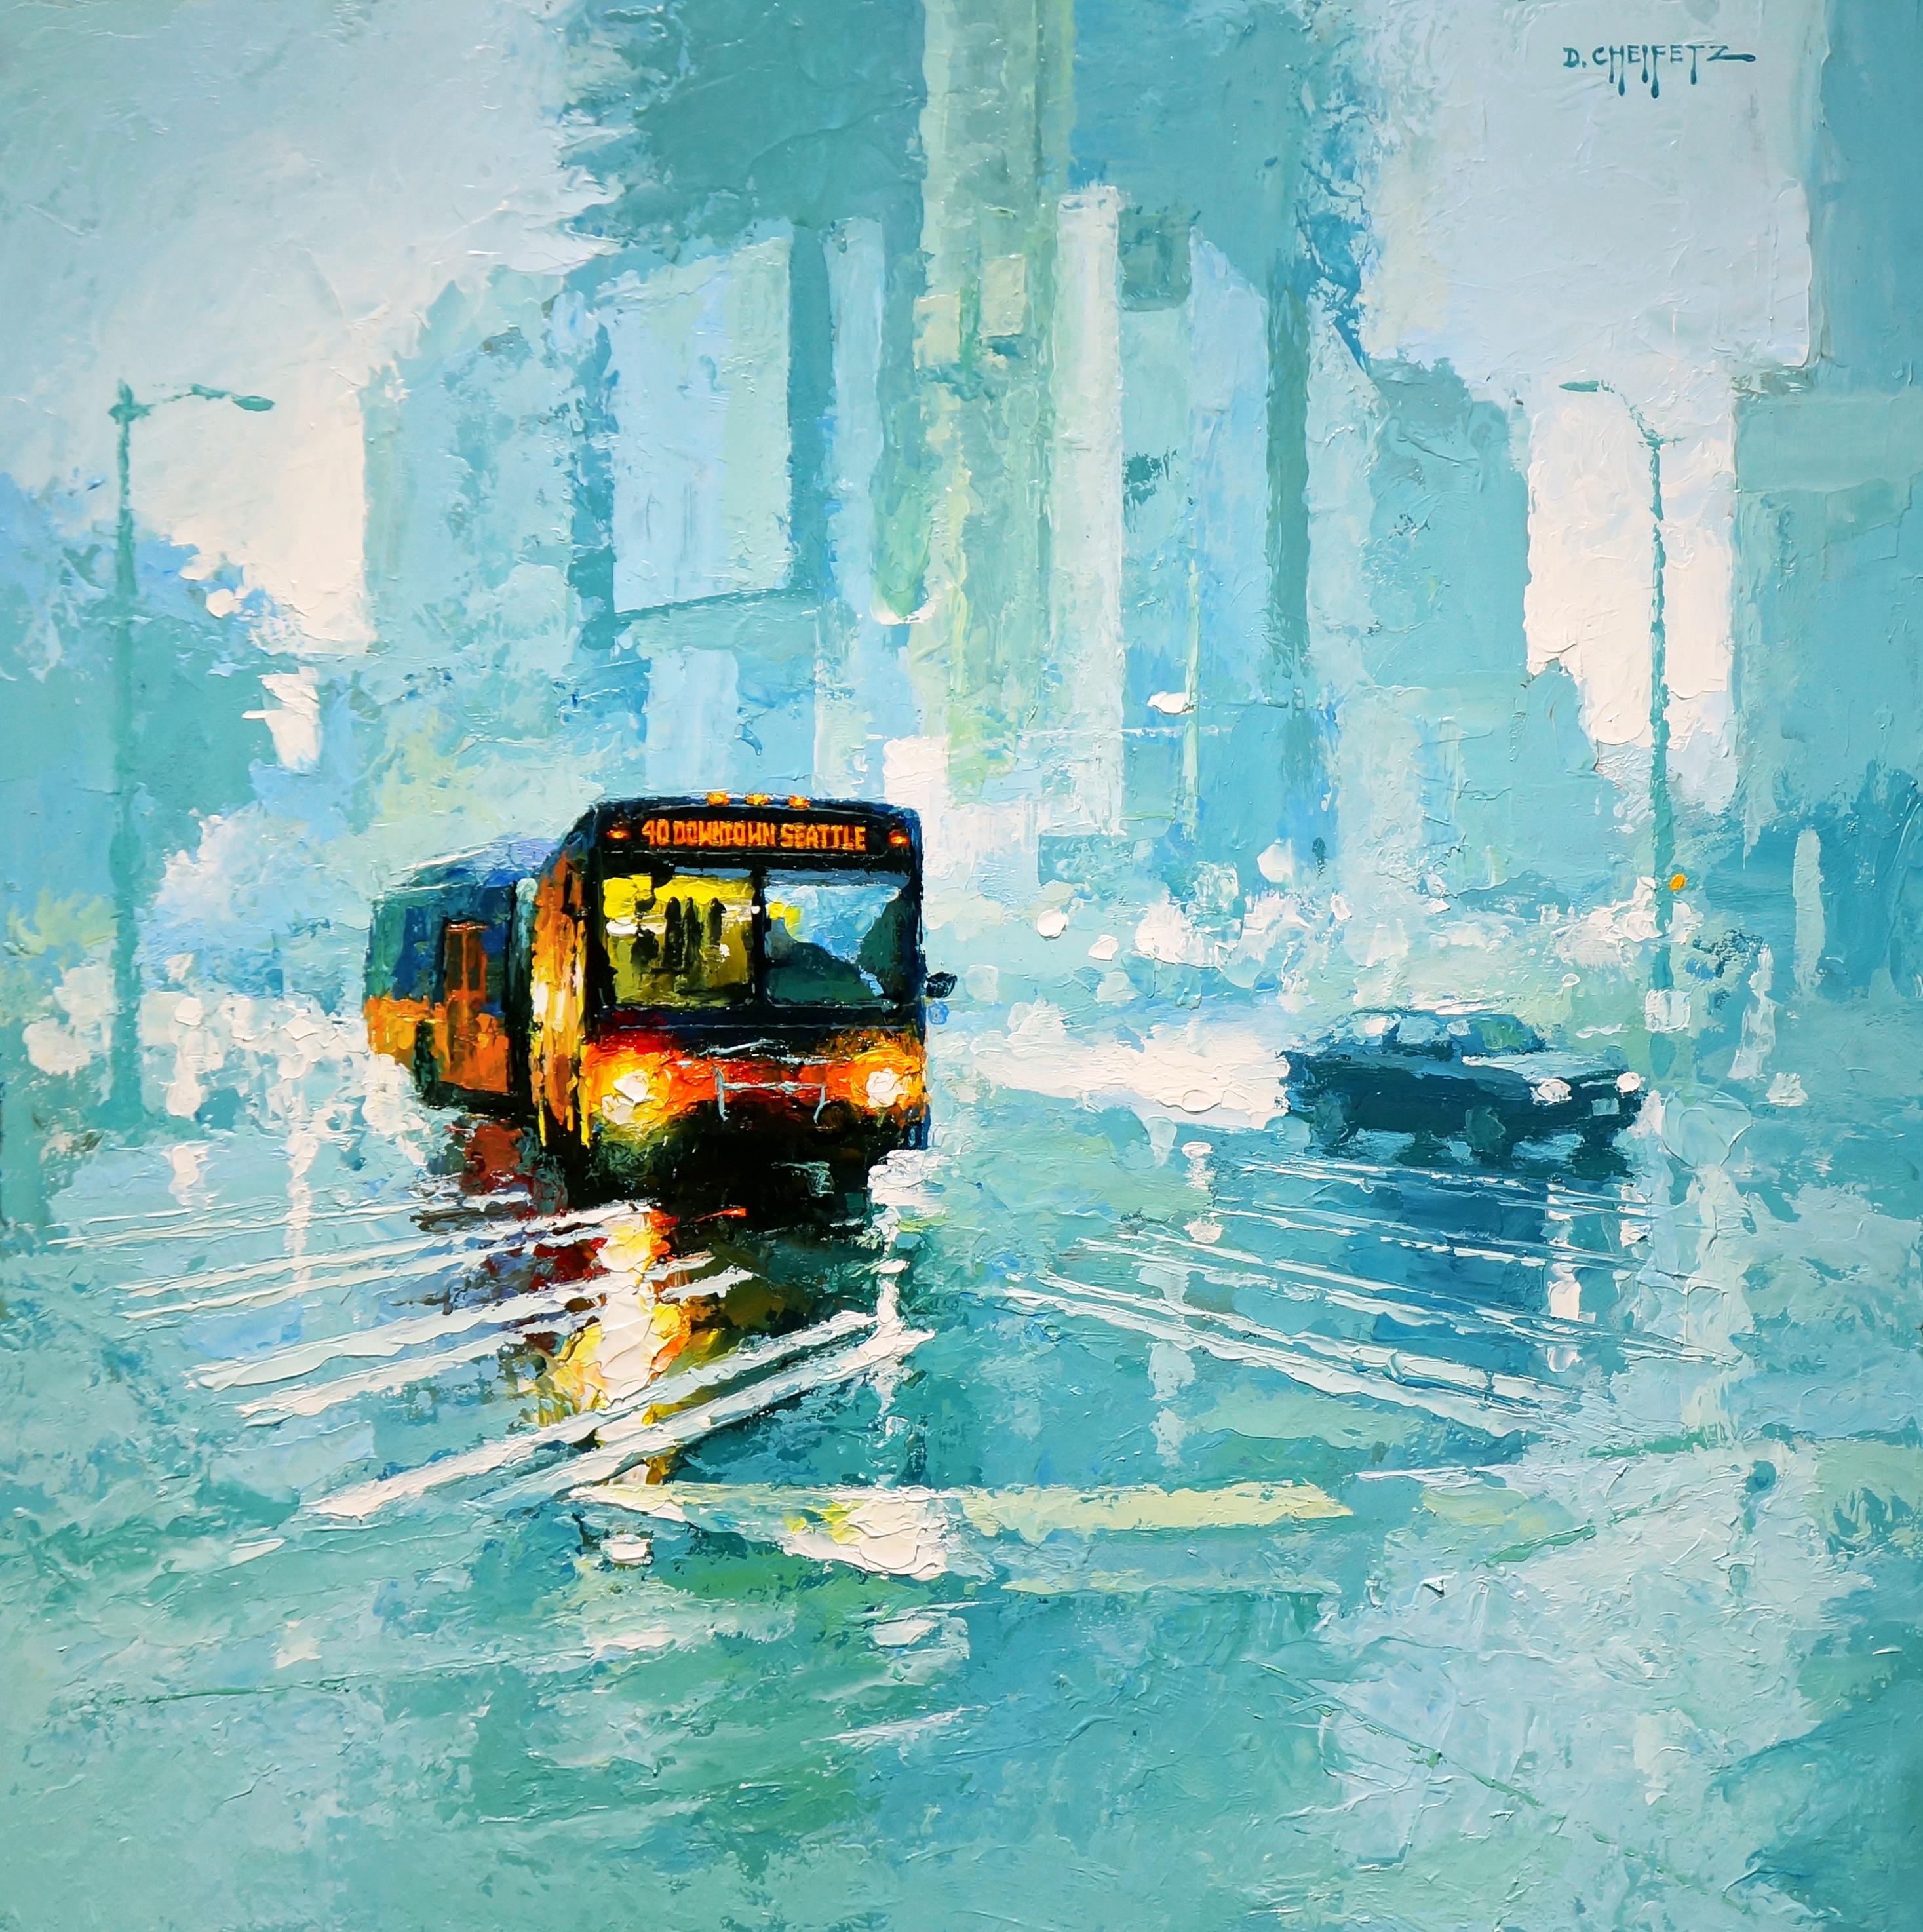 Landscape Painting David Cheifetz - 40 Downtown, peinture à l'huile